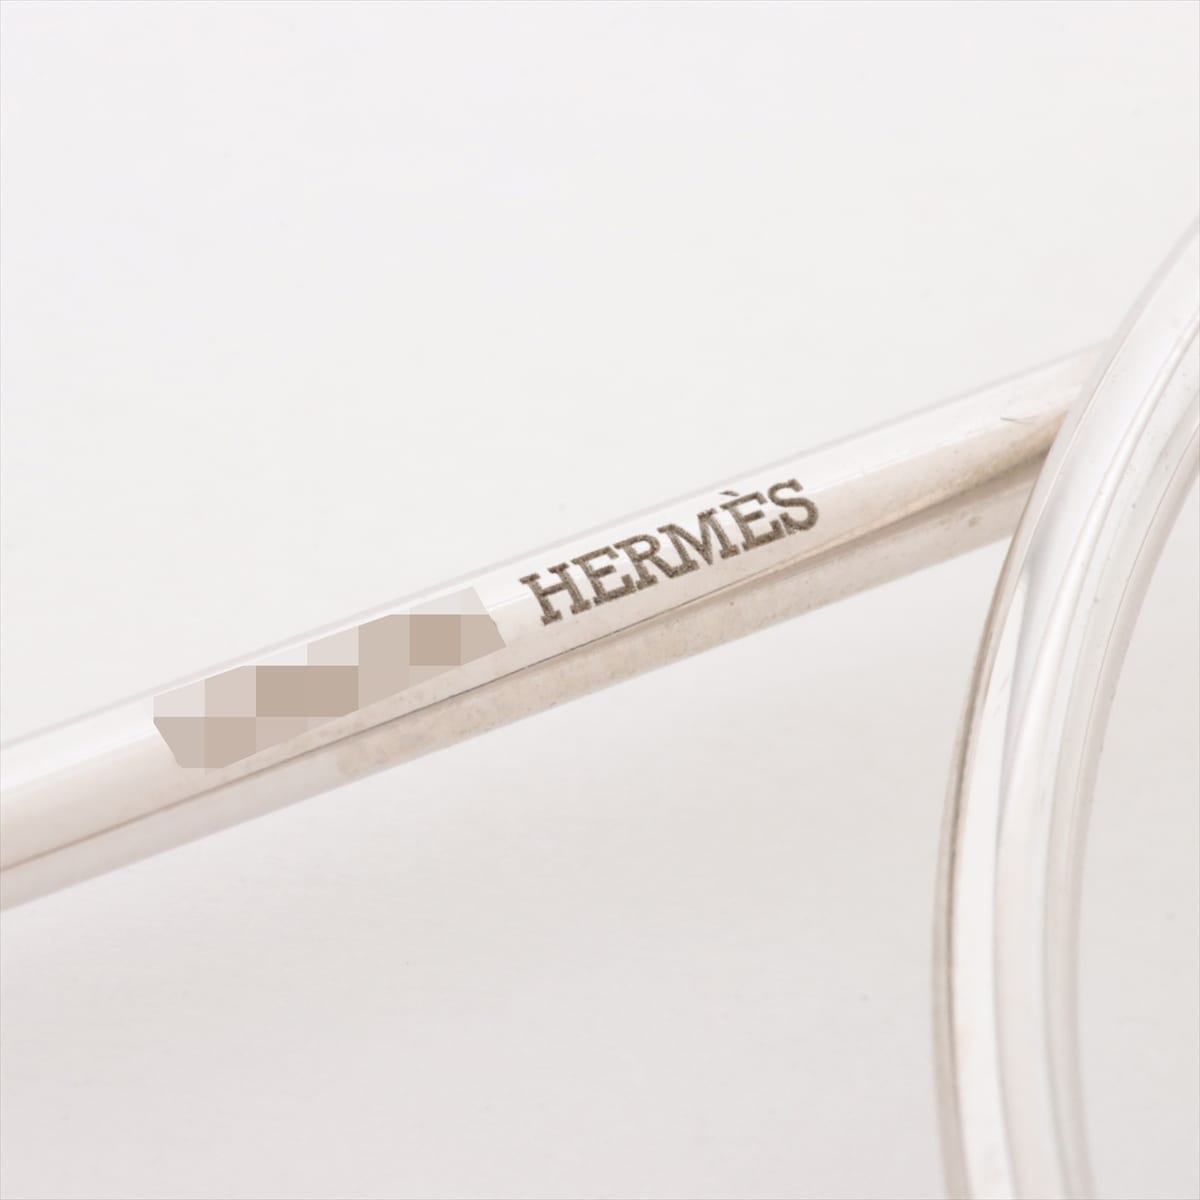 Hermès Loop Medium Piercing jewelry (for both ears) 925 925g Silver